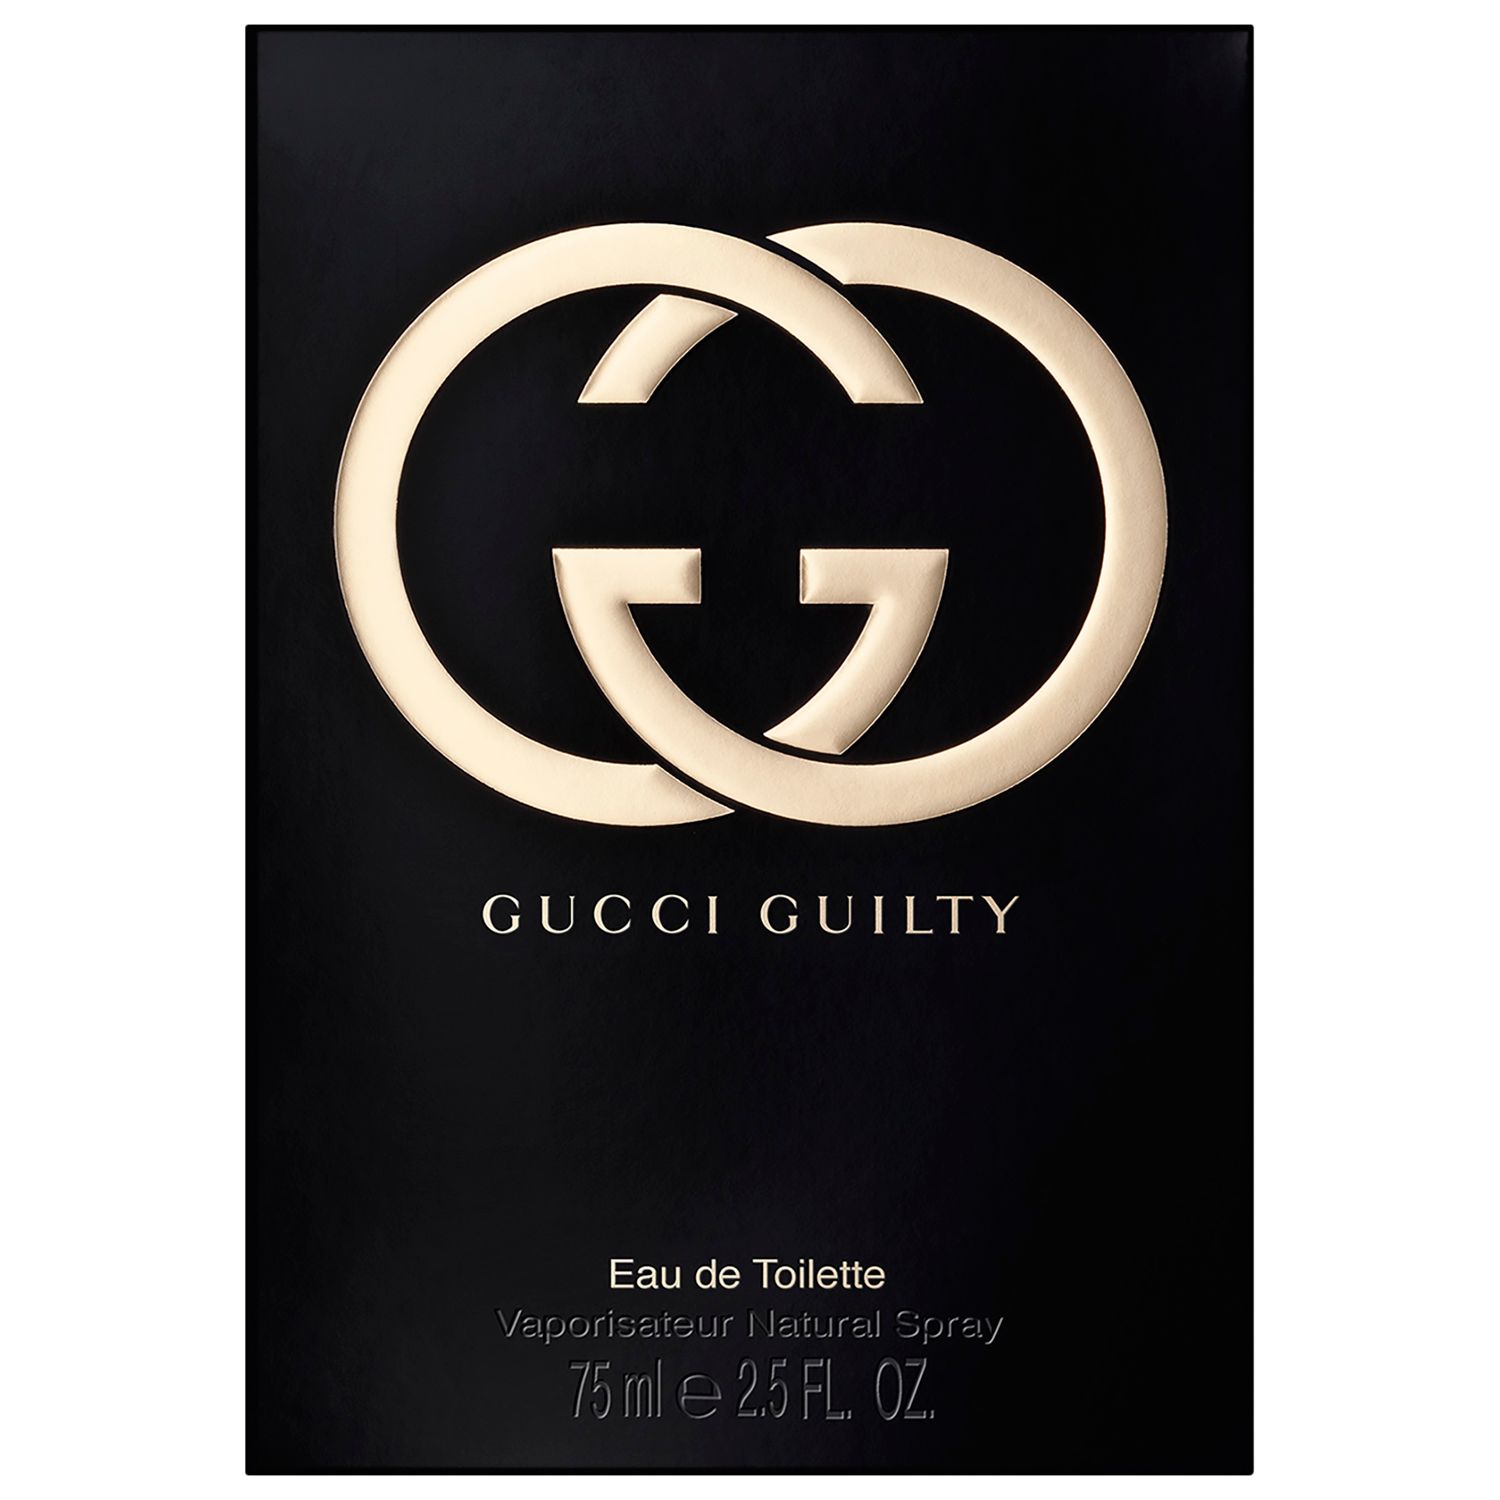 Gucci Guilty Eau de Toilette for Her